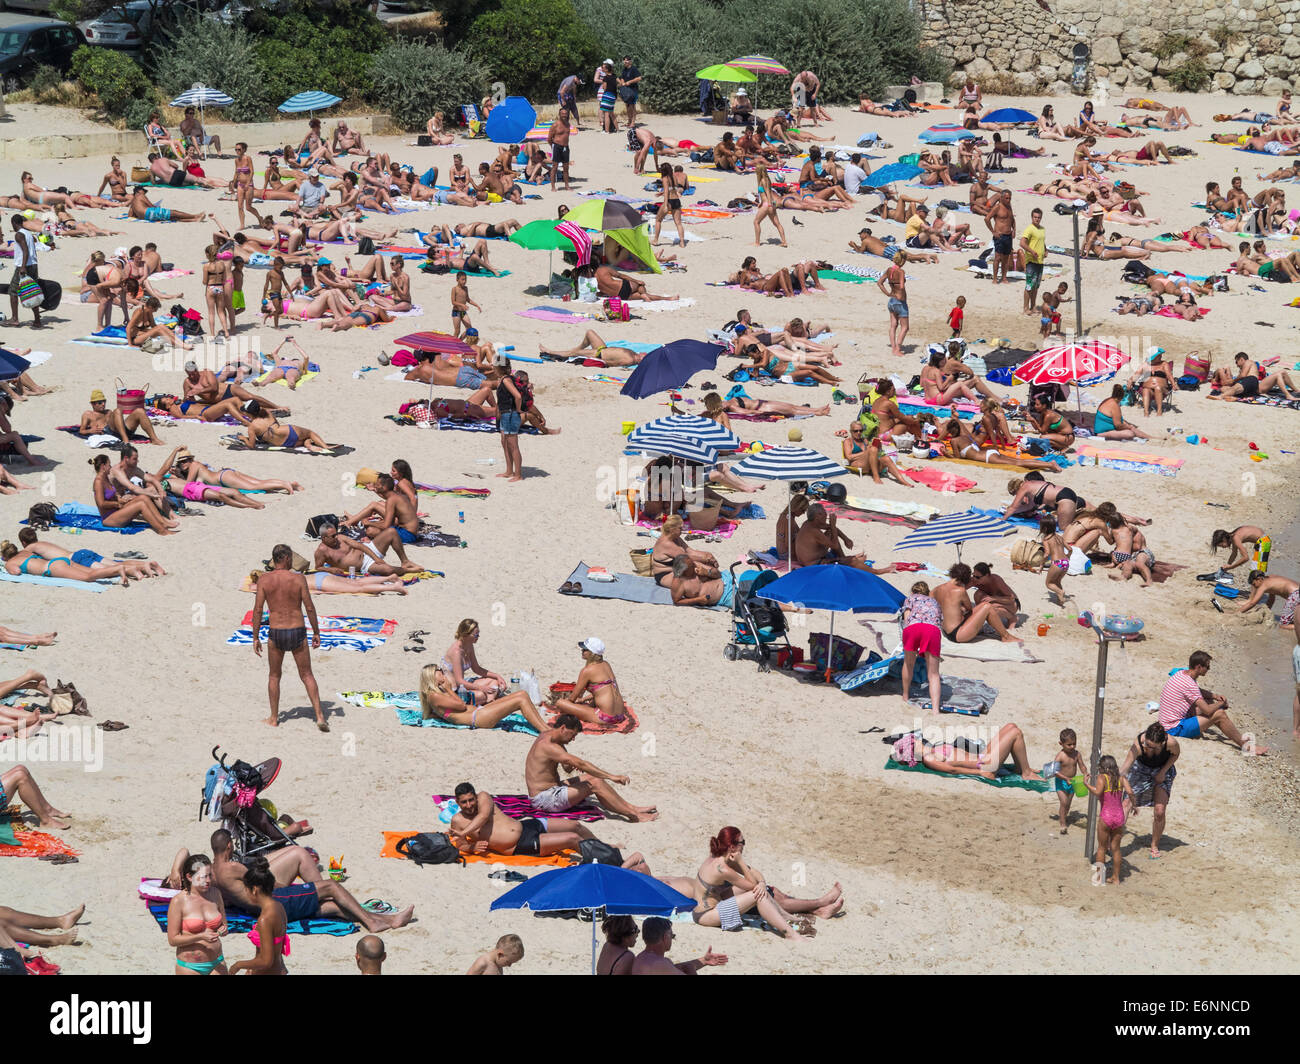 La folla di persone a prendere il sole sulla spiaggia a Antibes, Cote d'Azur, in Provenza Costa Azzurra, nel sud della Francia nella stagione estiva Foto Stock